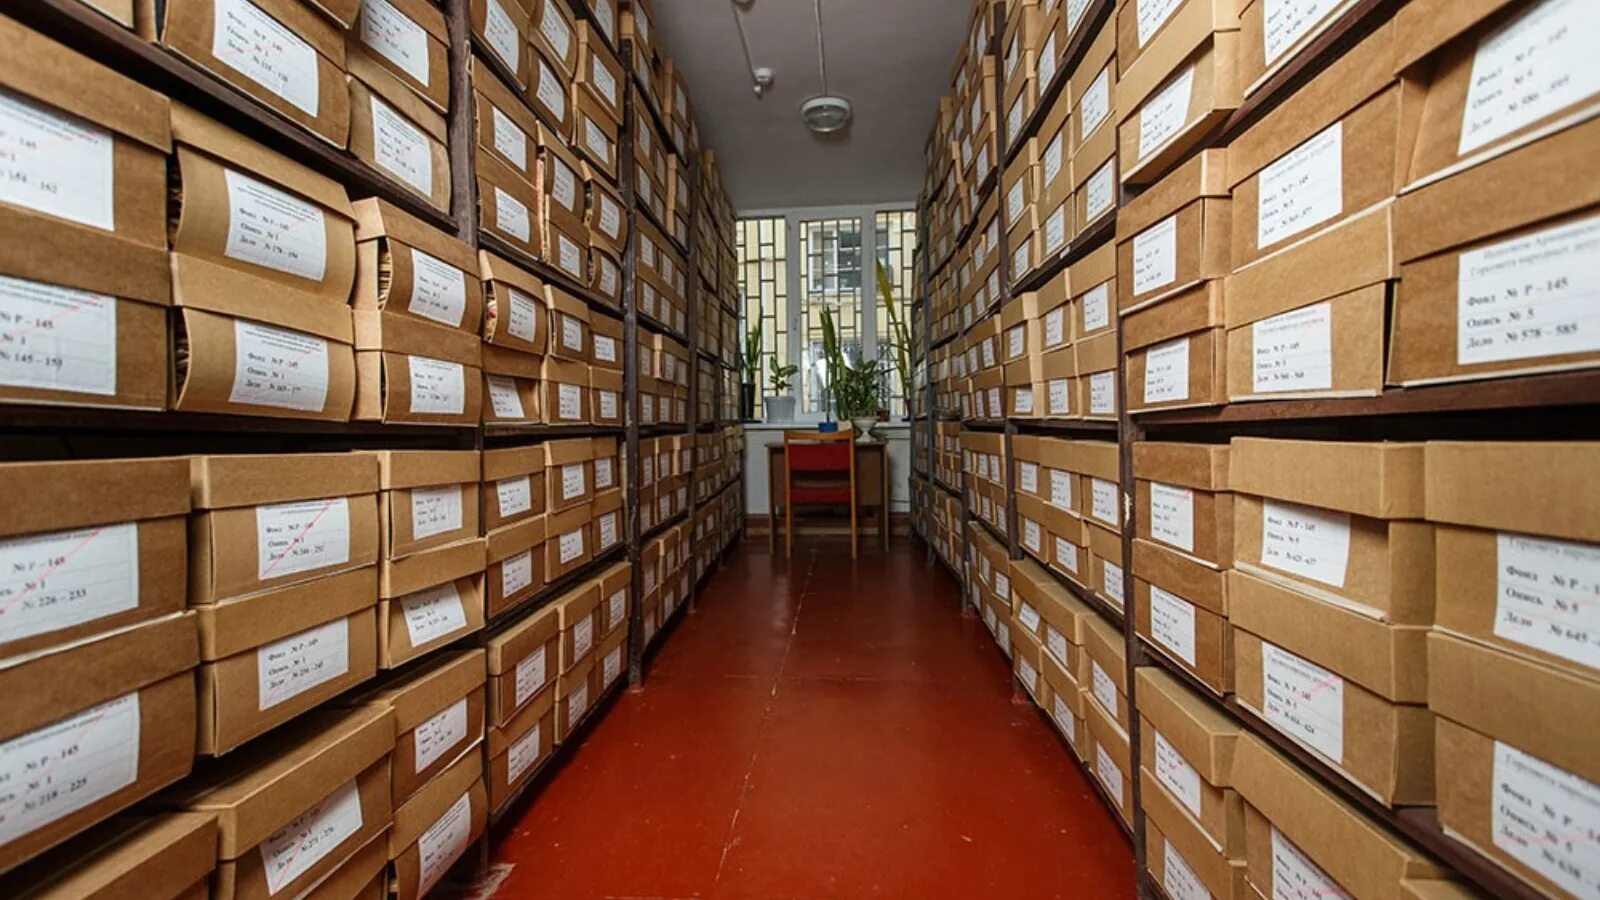 Архив. Государственный архивный фонд. Современное архивохранилище. Архив документов.